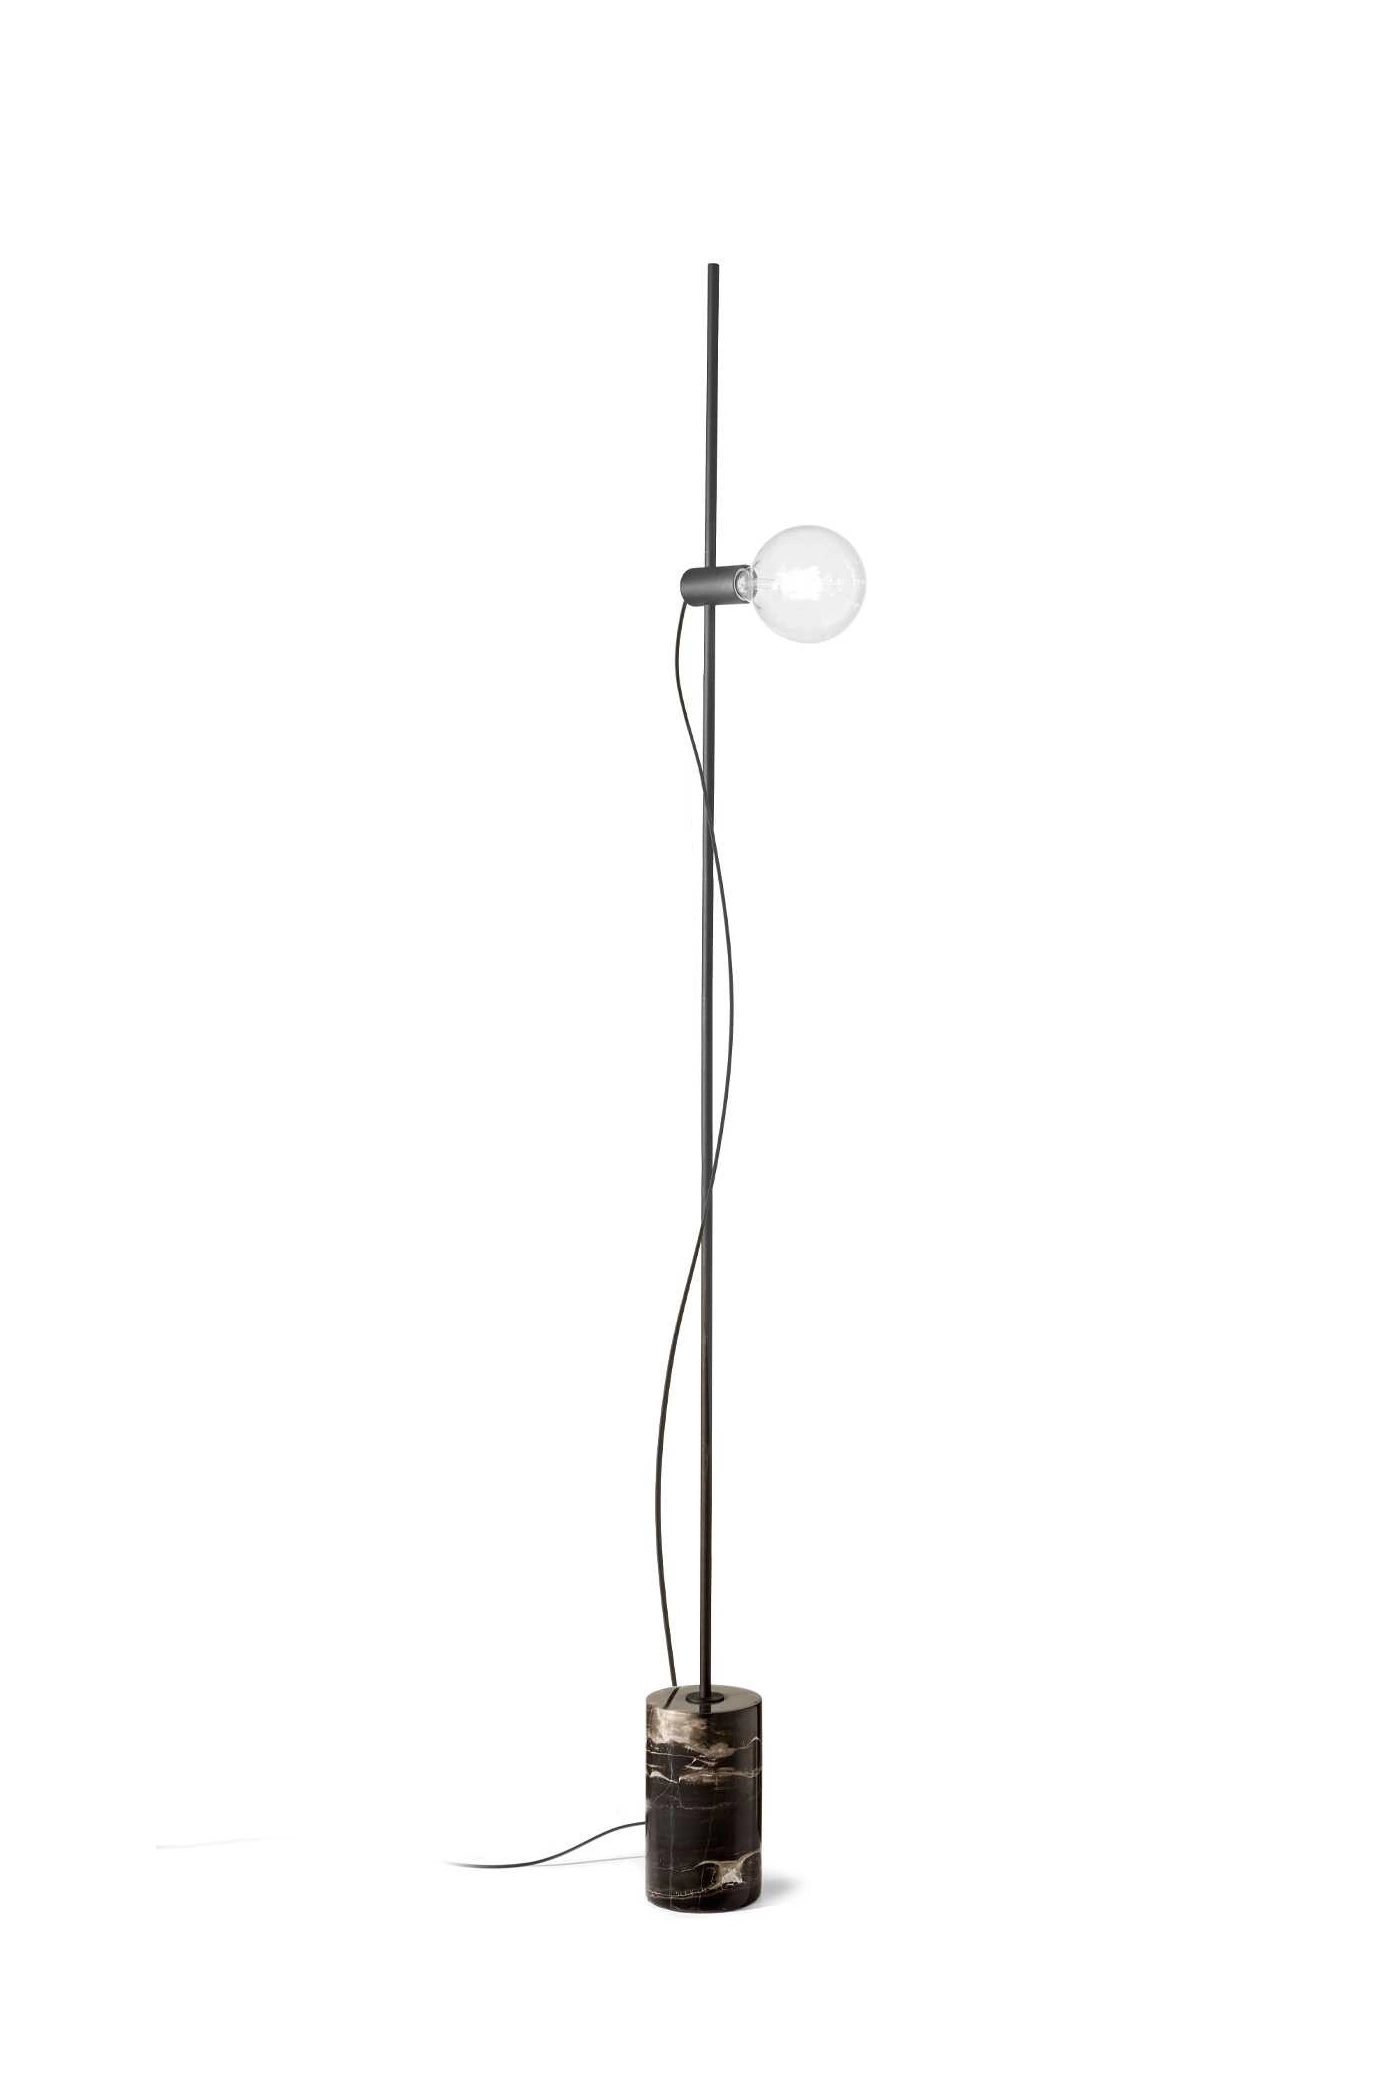   
                        
                        Торшер IDEAL LUX (Італія) 10243    
                         у стилі Лофт.  
                        Тип джерела світла: світлодіодна лампа, змінна.                                                                                                  фото 1